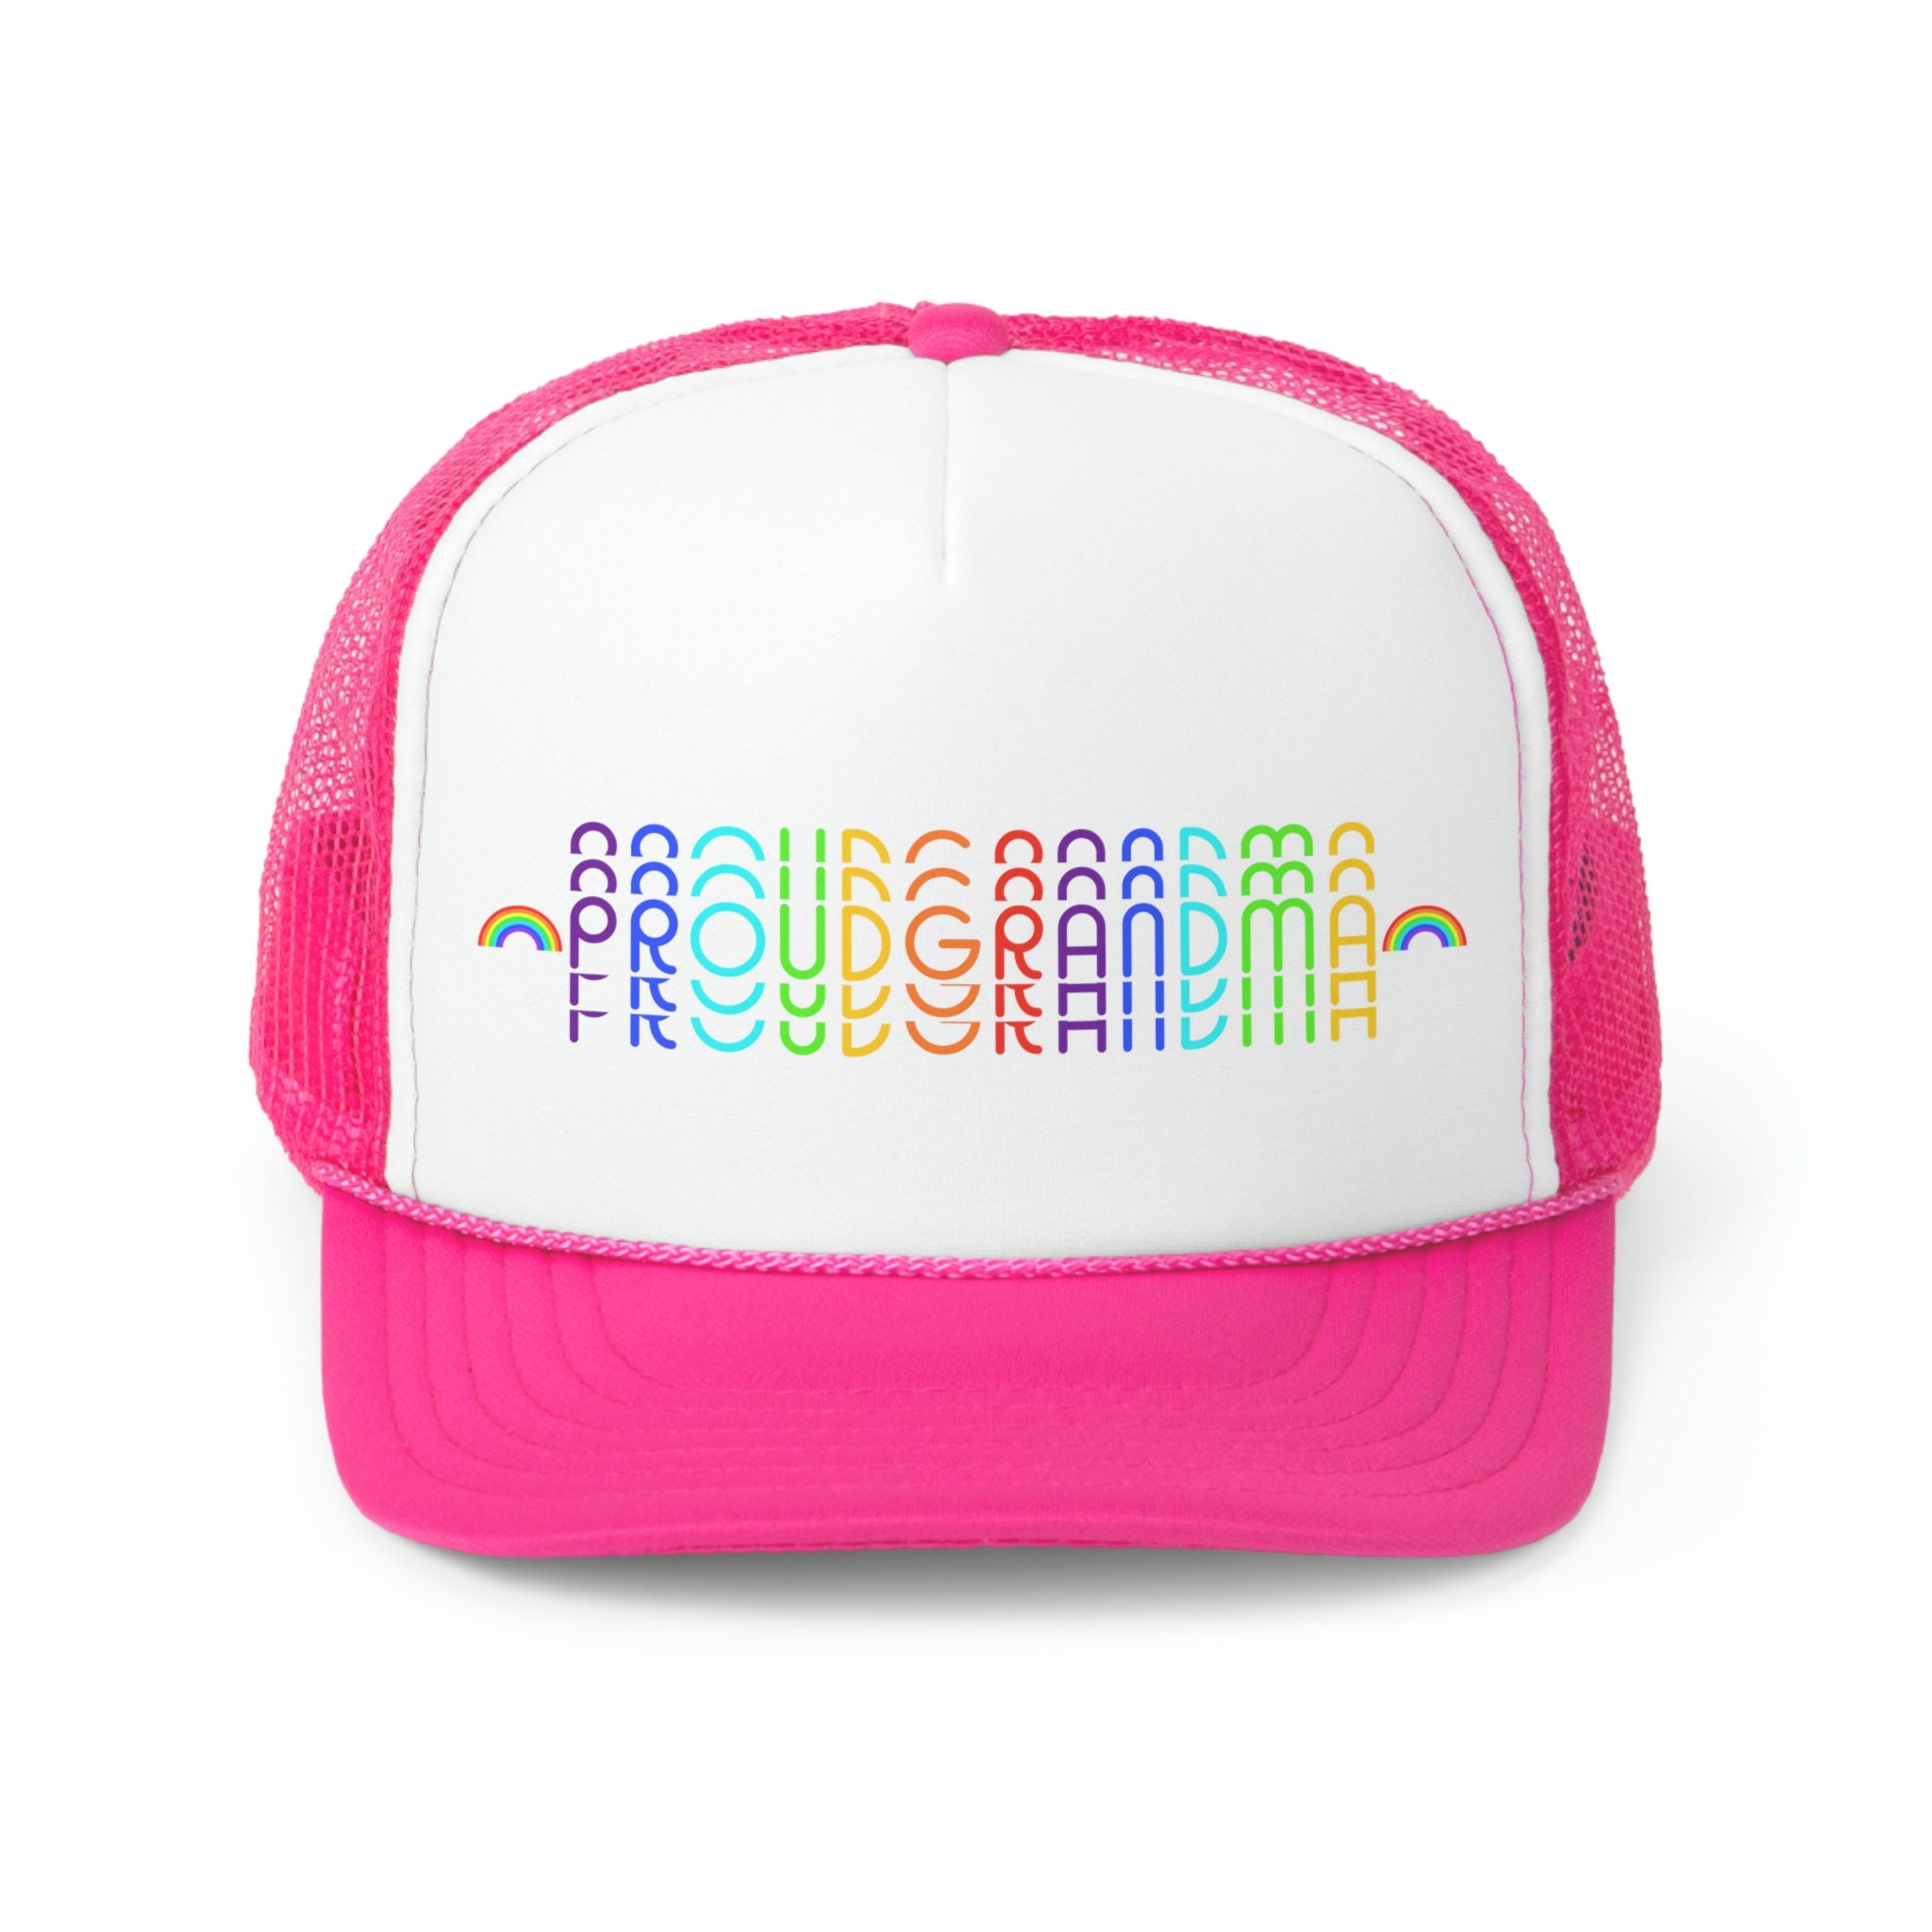 The Hat | for Proud Parents, Grandparents etc.